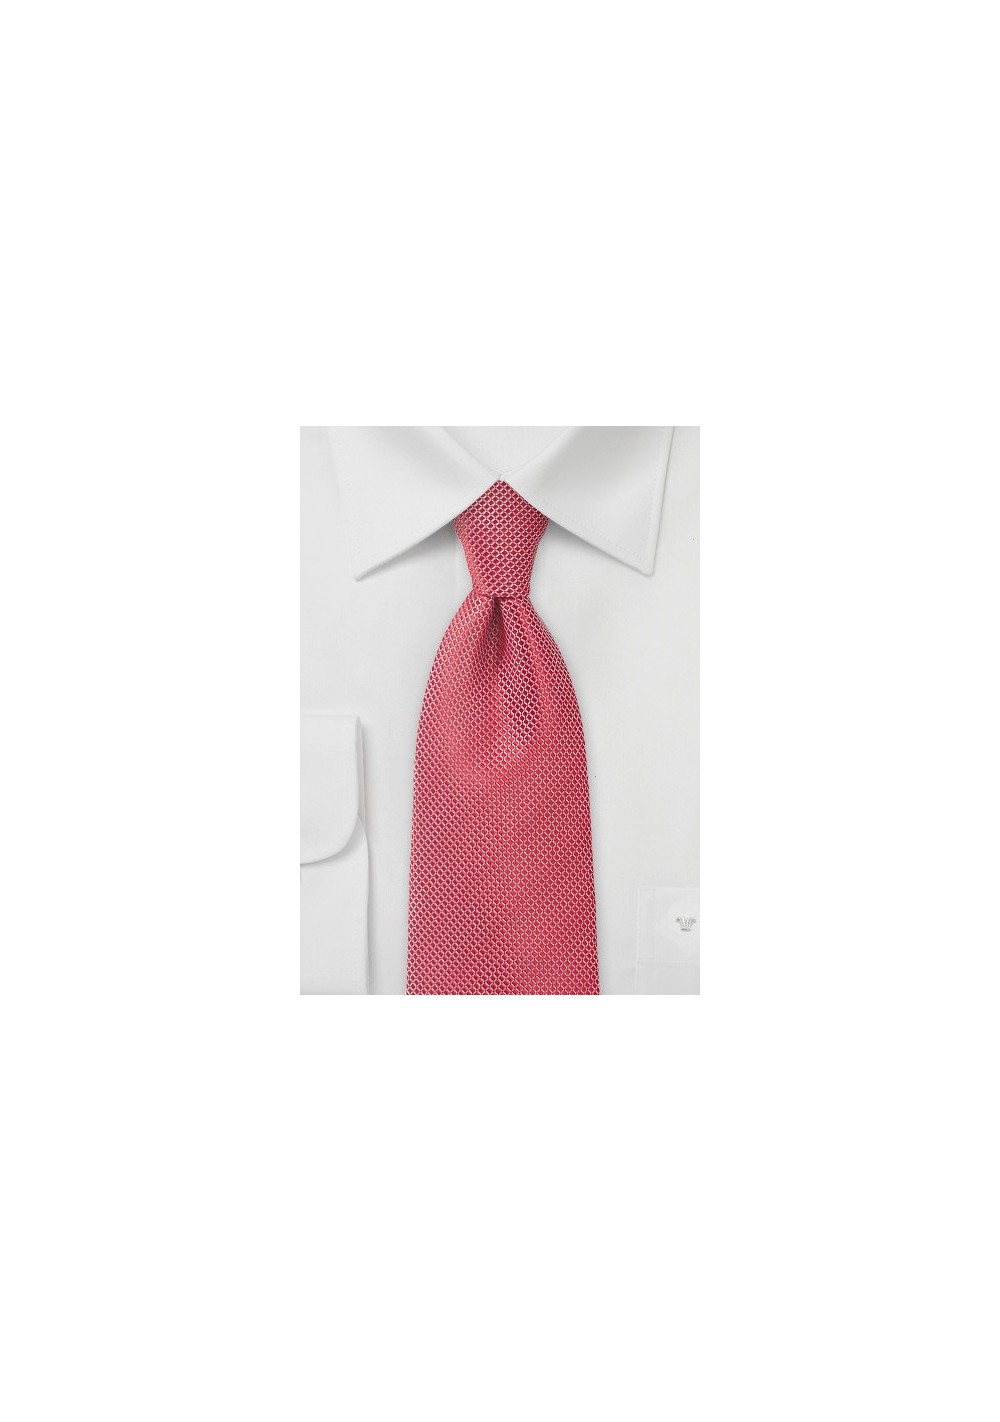 Bright Poppy Red Textured Tie